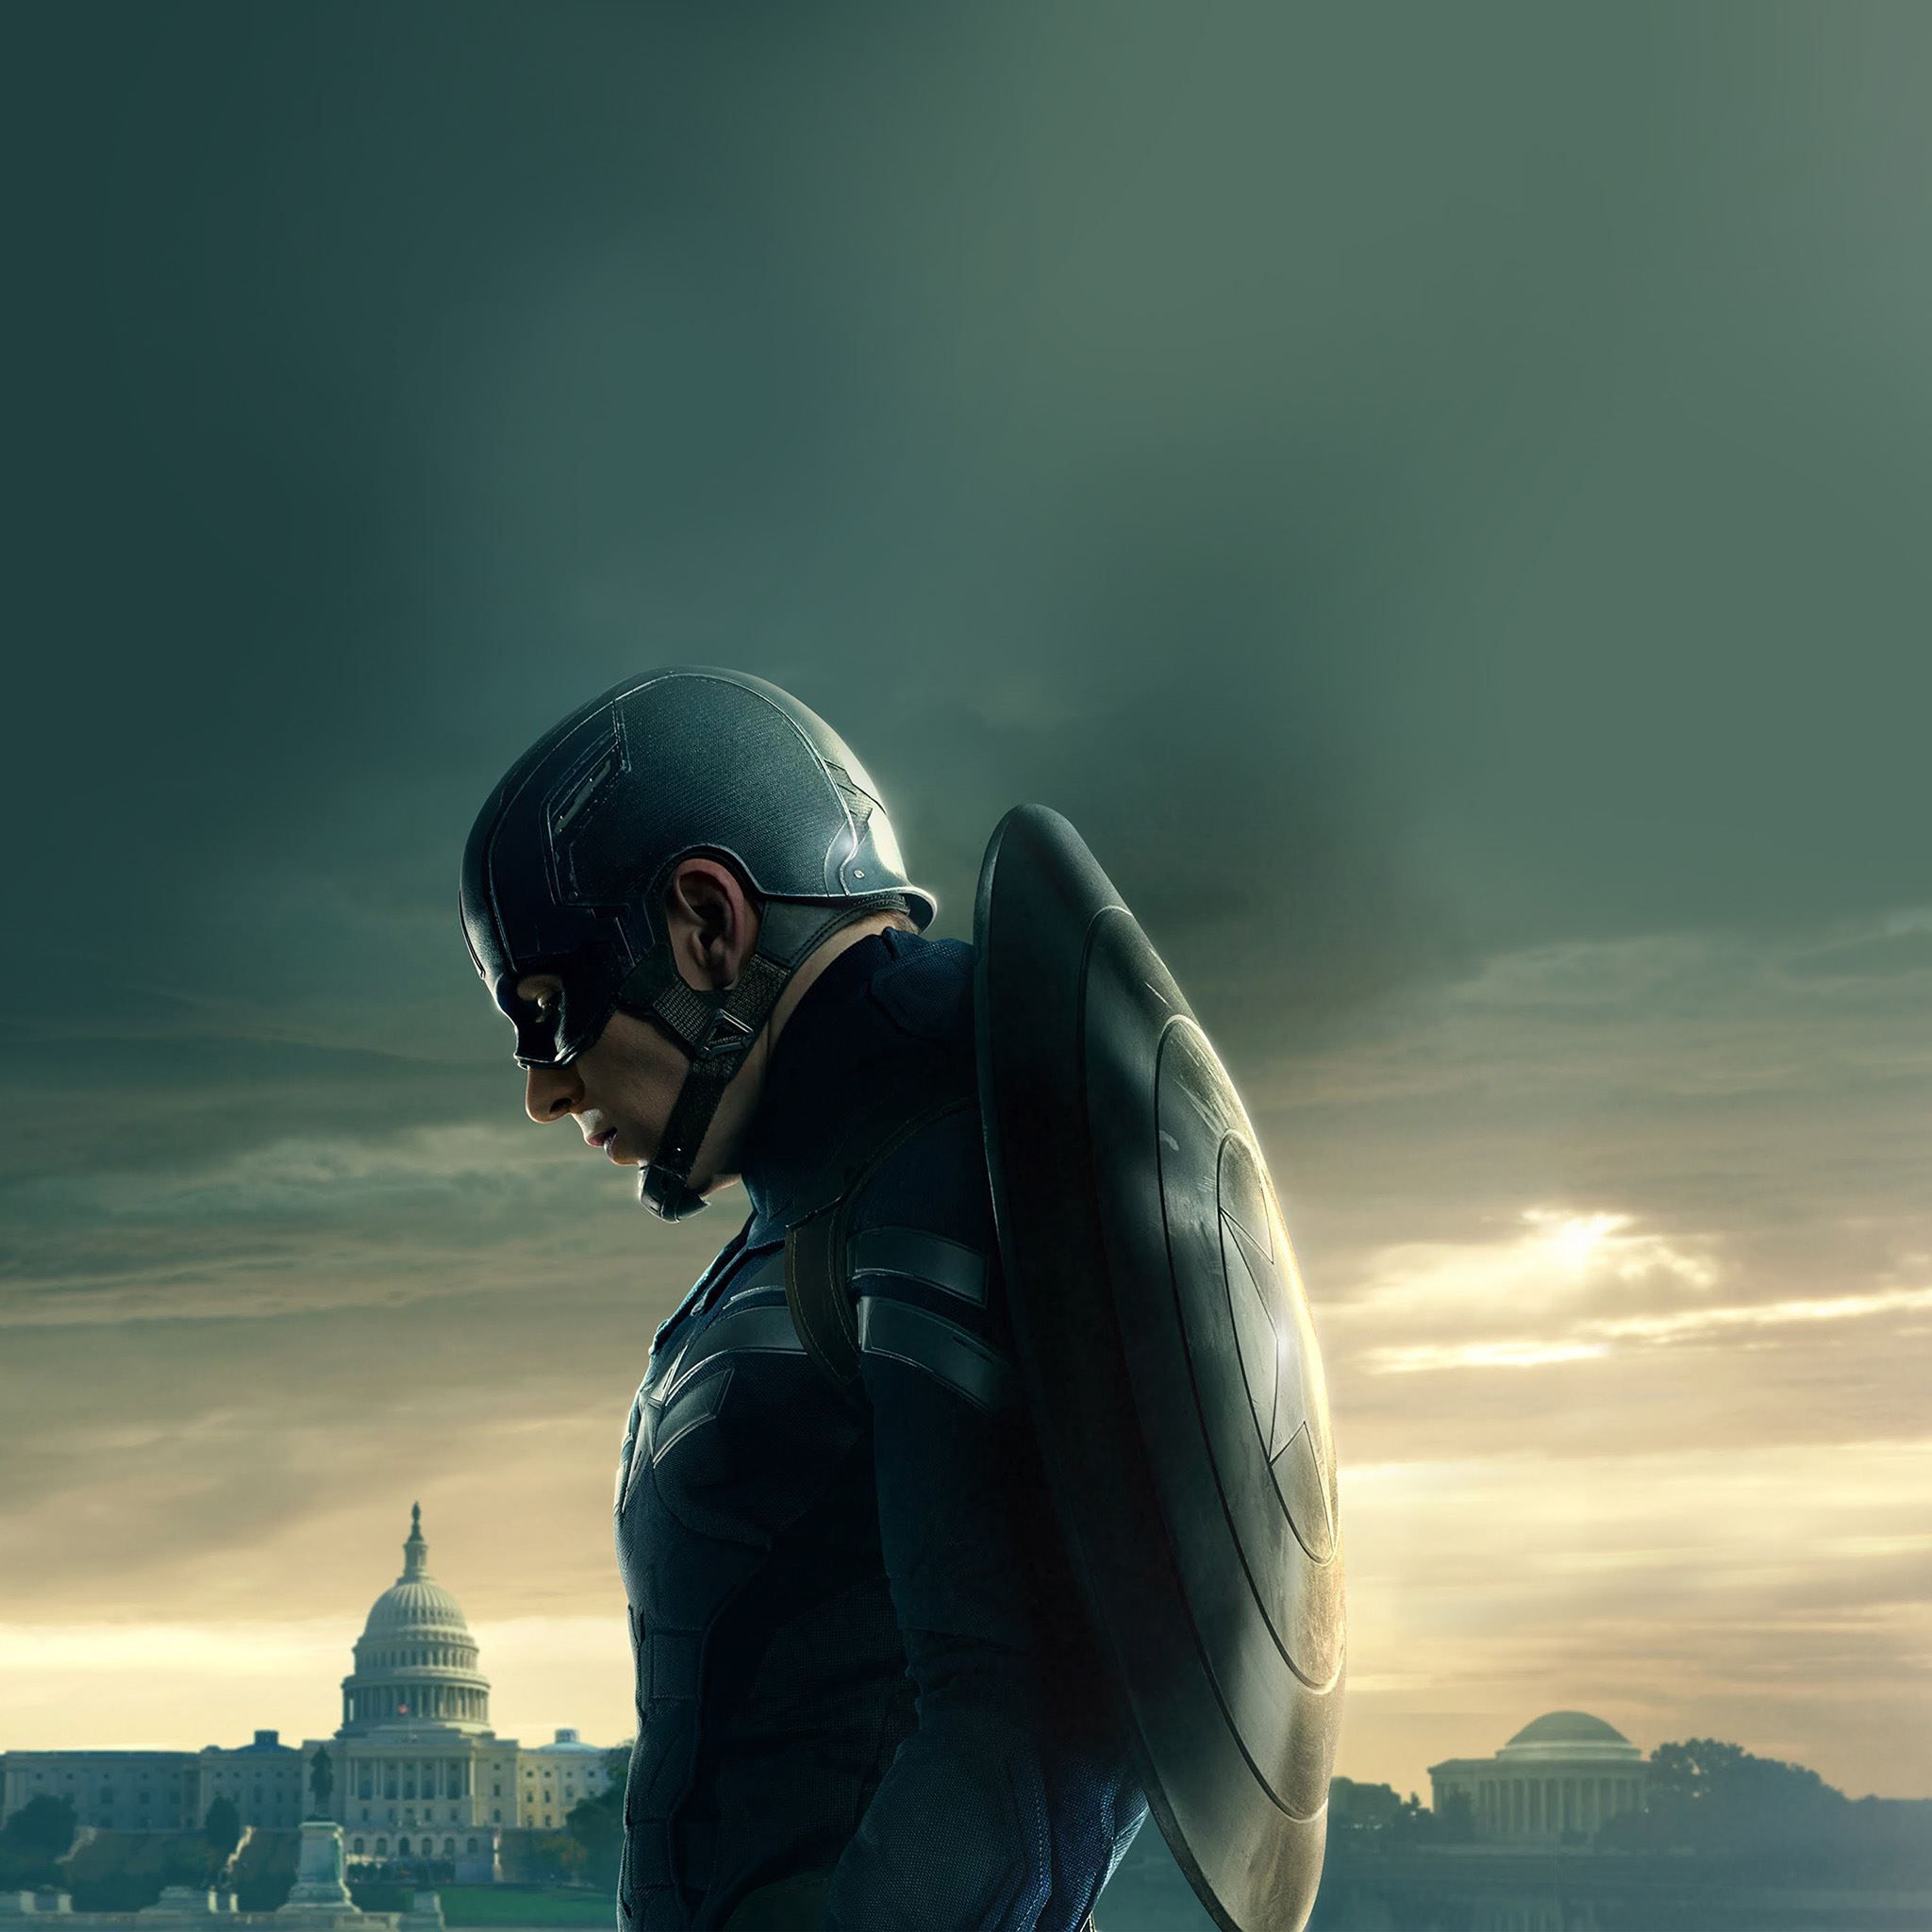 Captain America Sad Hero Film Marvel iPad Air Wallpaper Free Download